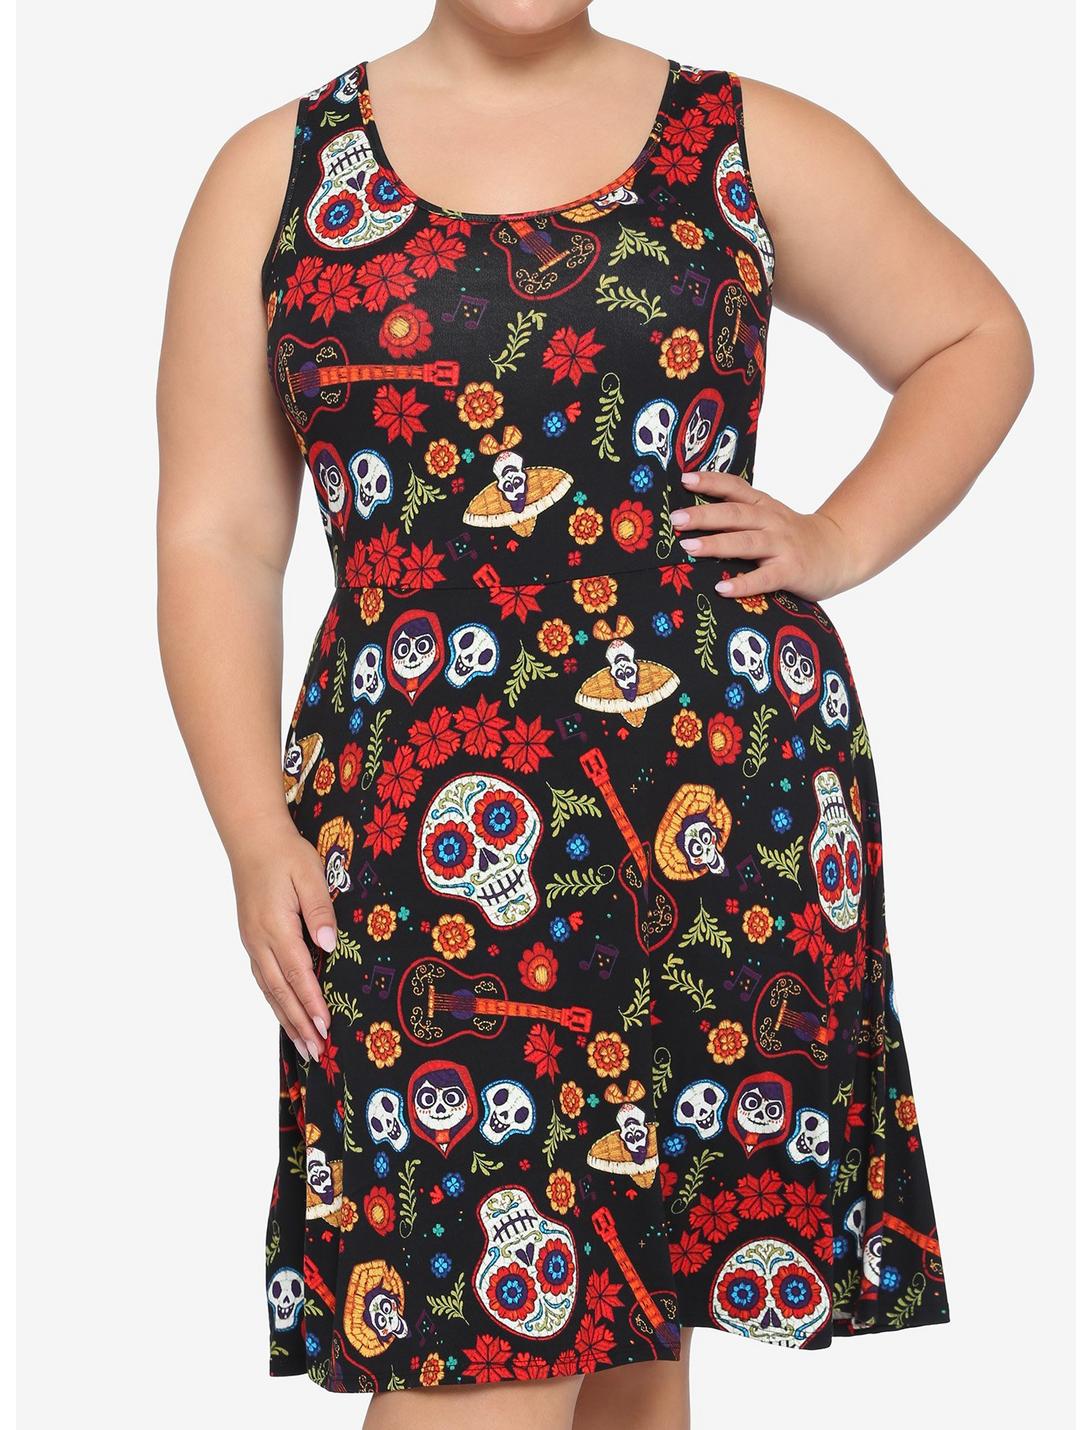 Disney Pixar Coco Floral Lace Back Dress Plus Size, MULTI, hi-res